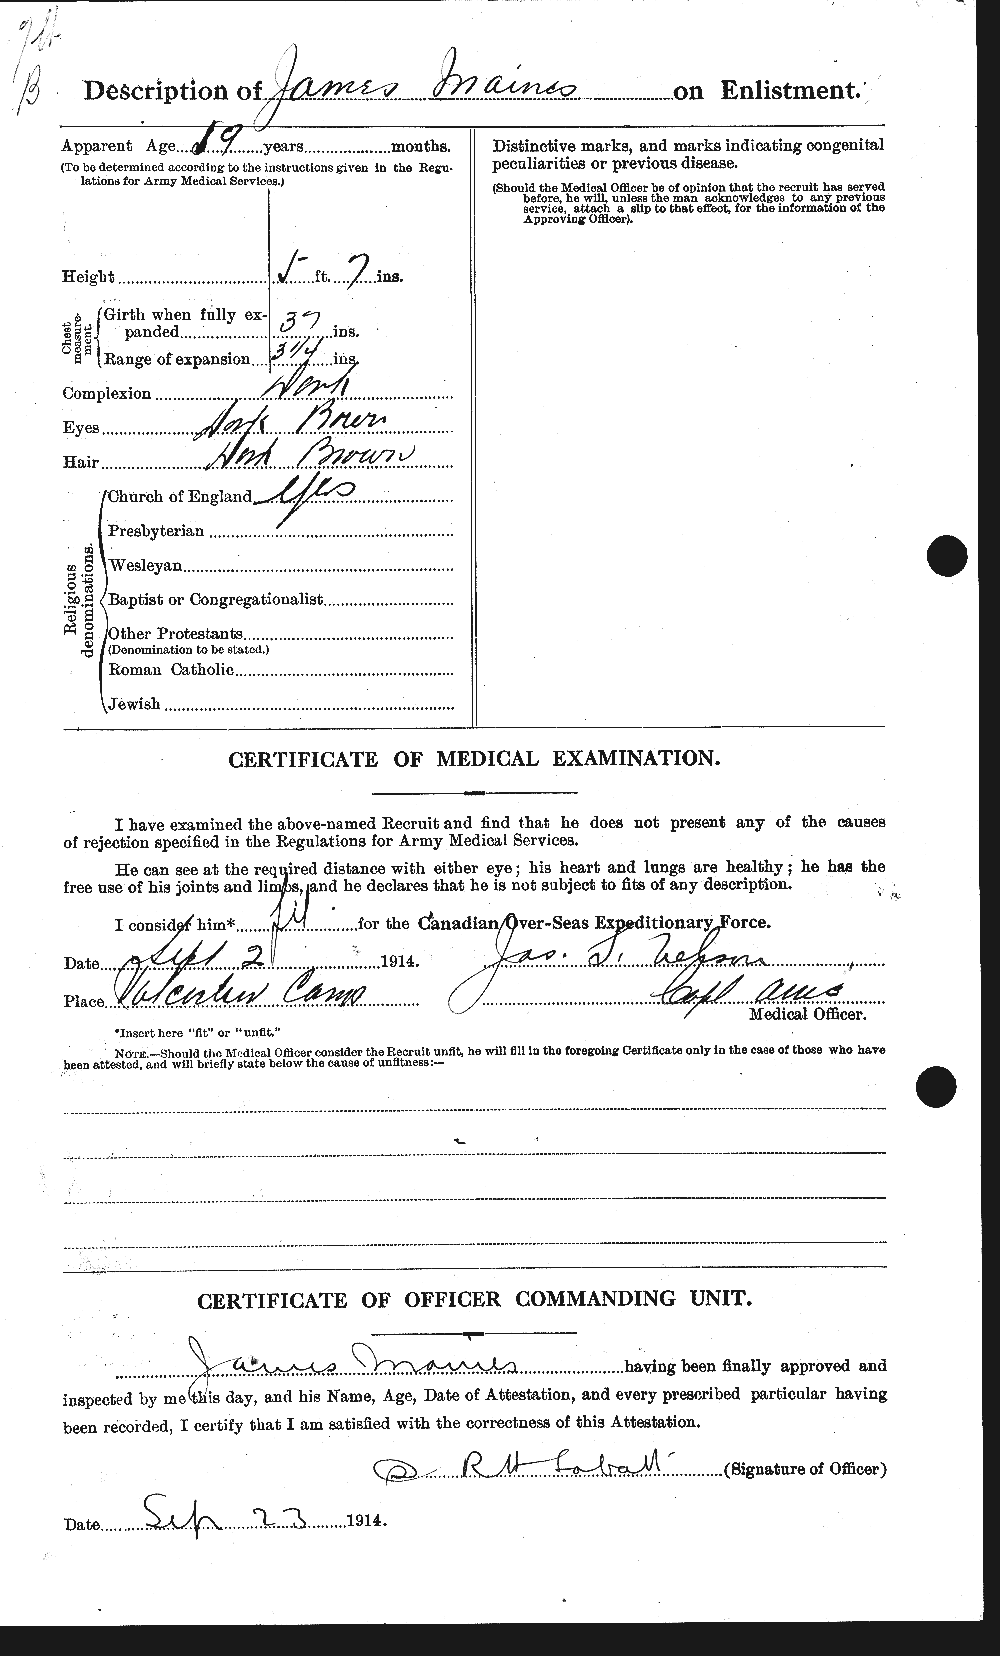 Dossiers du Personnel de la Première Guerre mondiale - CEC 471481b